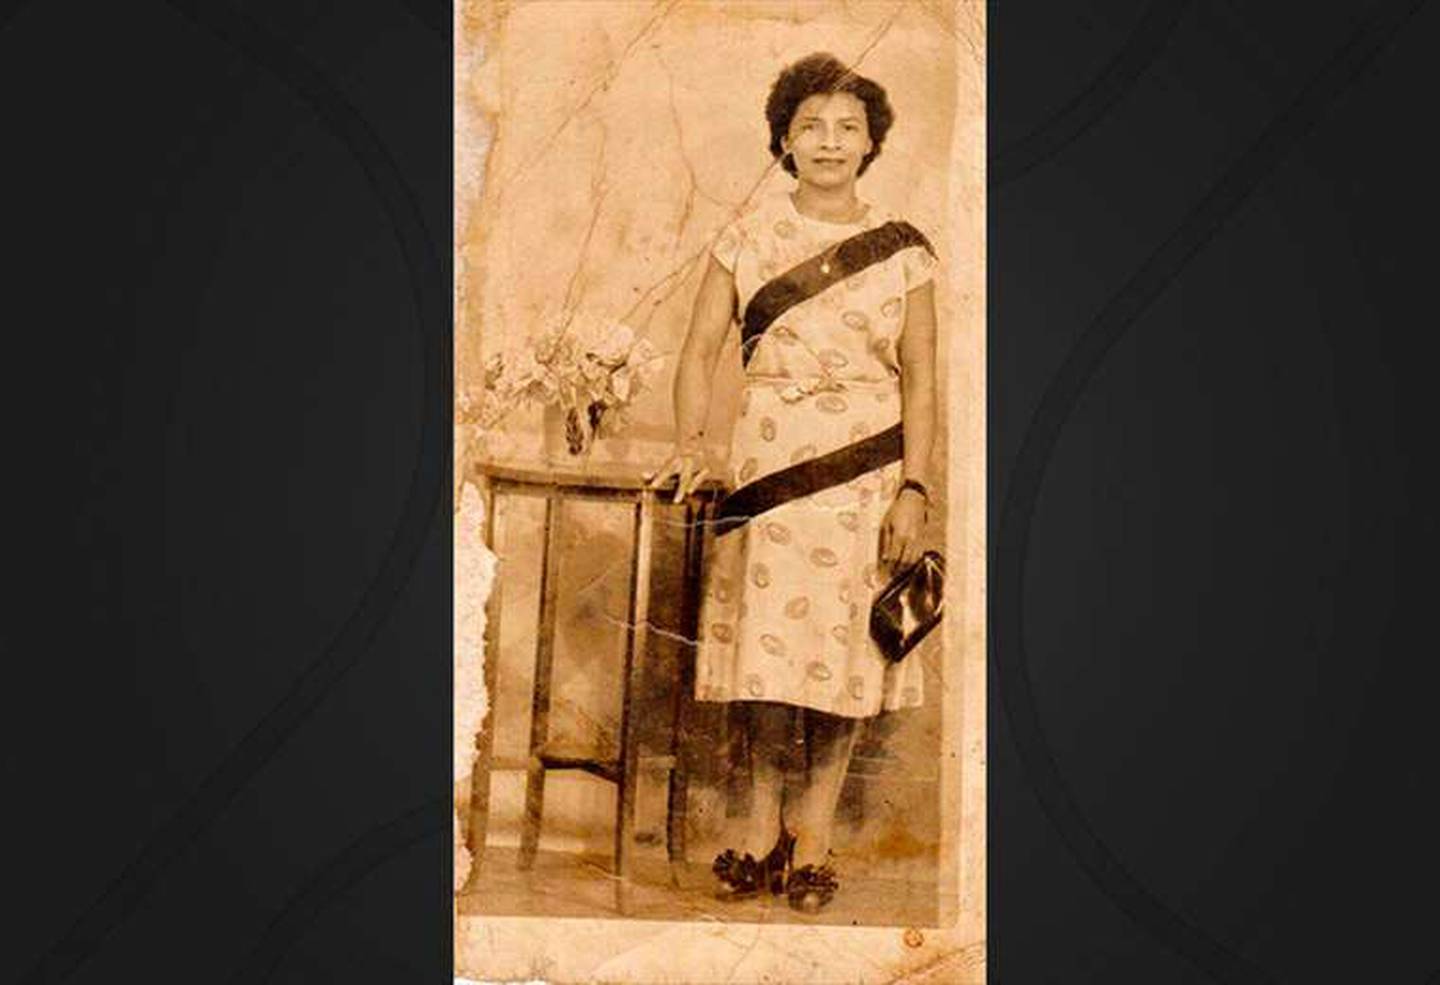 Este jueves 23 de junio del 2022, 115 años después de haber nacido, falleció doña Berta Cantillano Cantillano, quien era la tica con más edad del país.